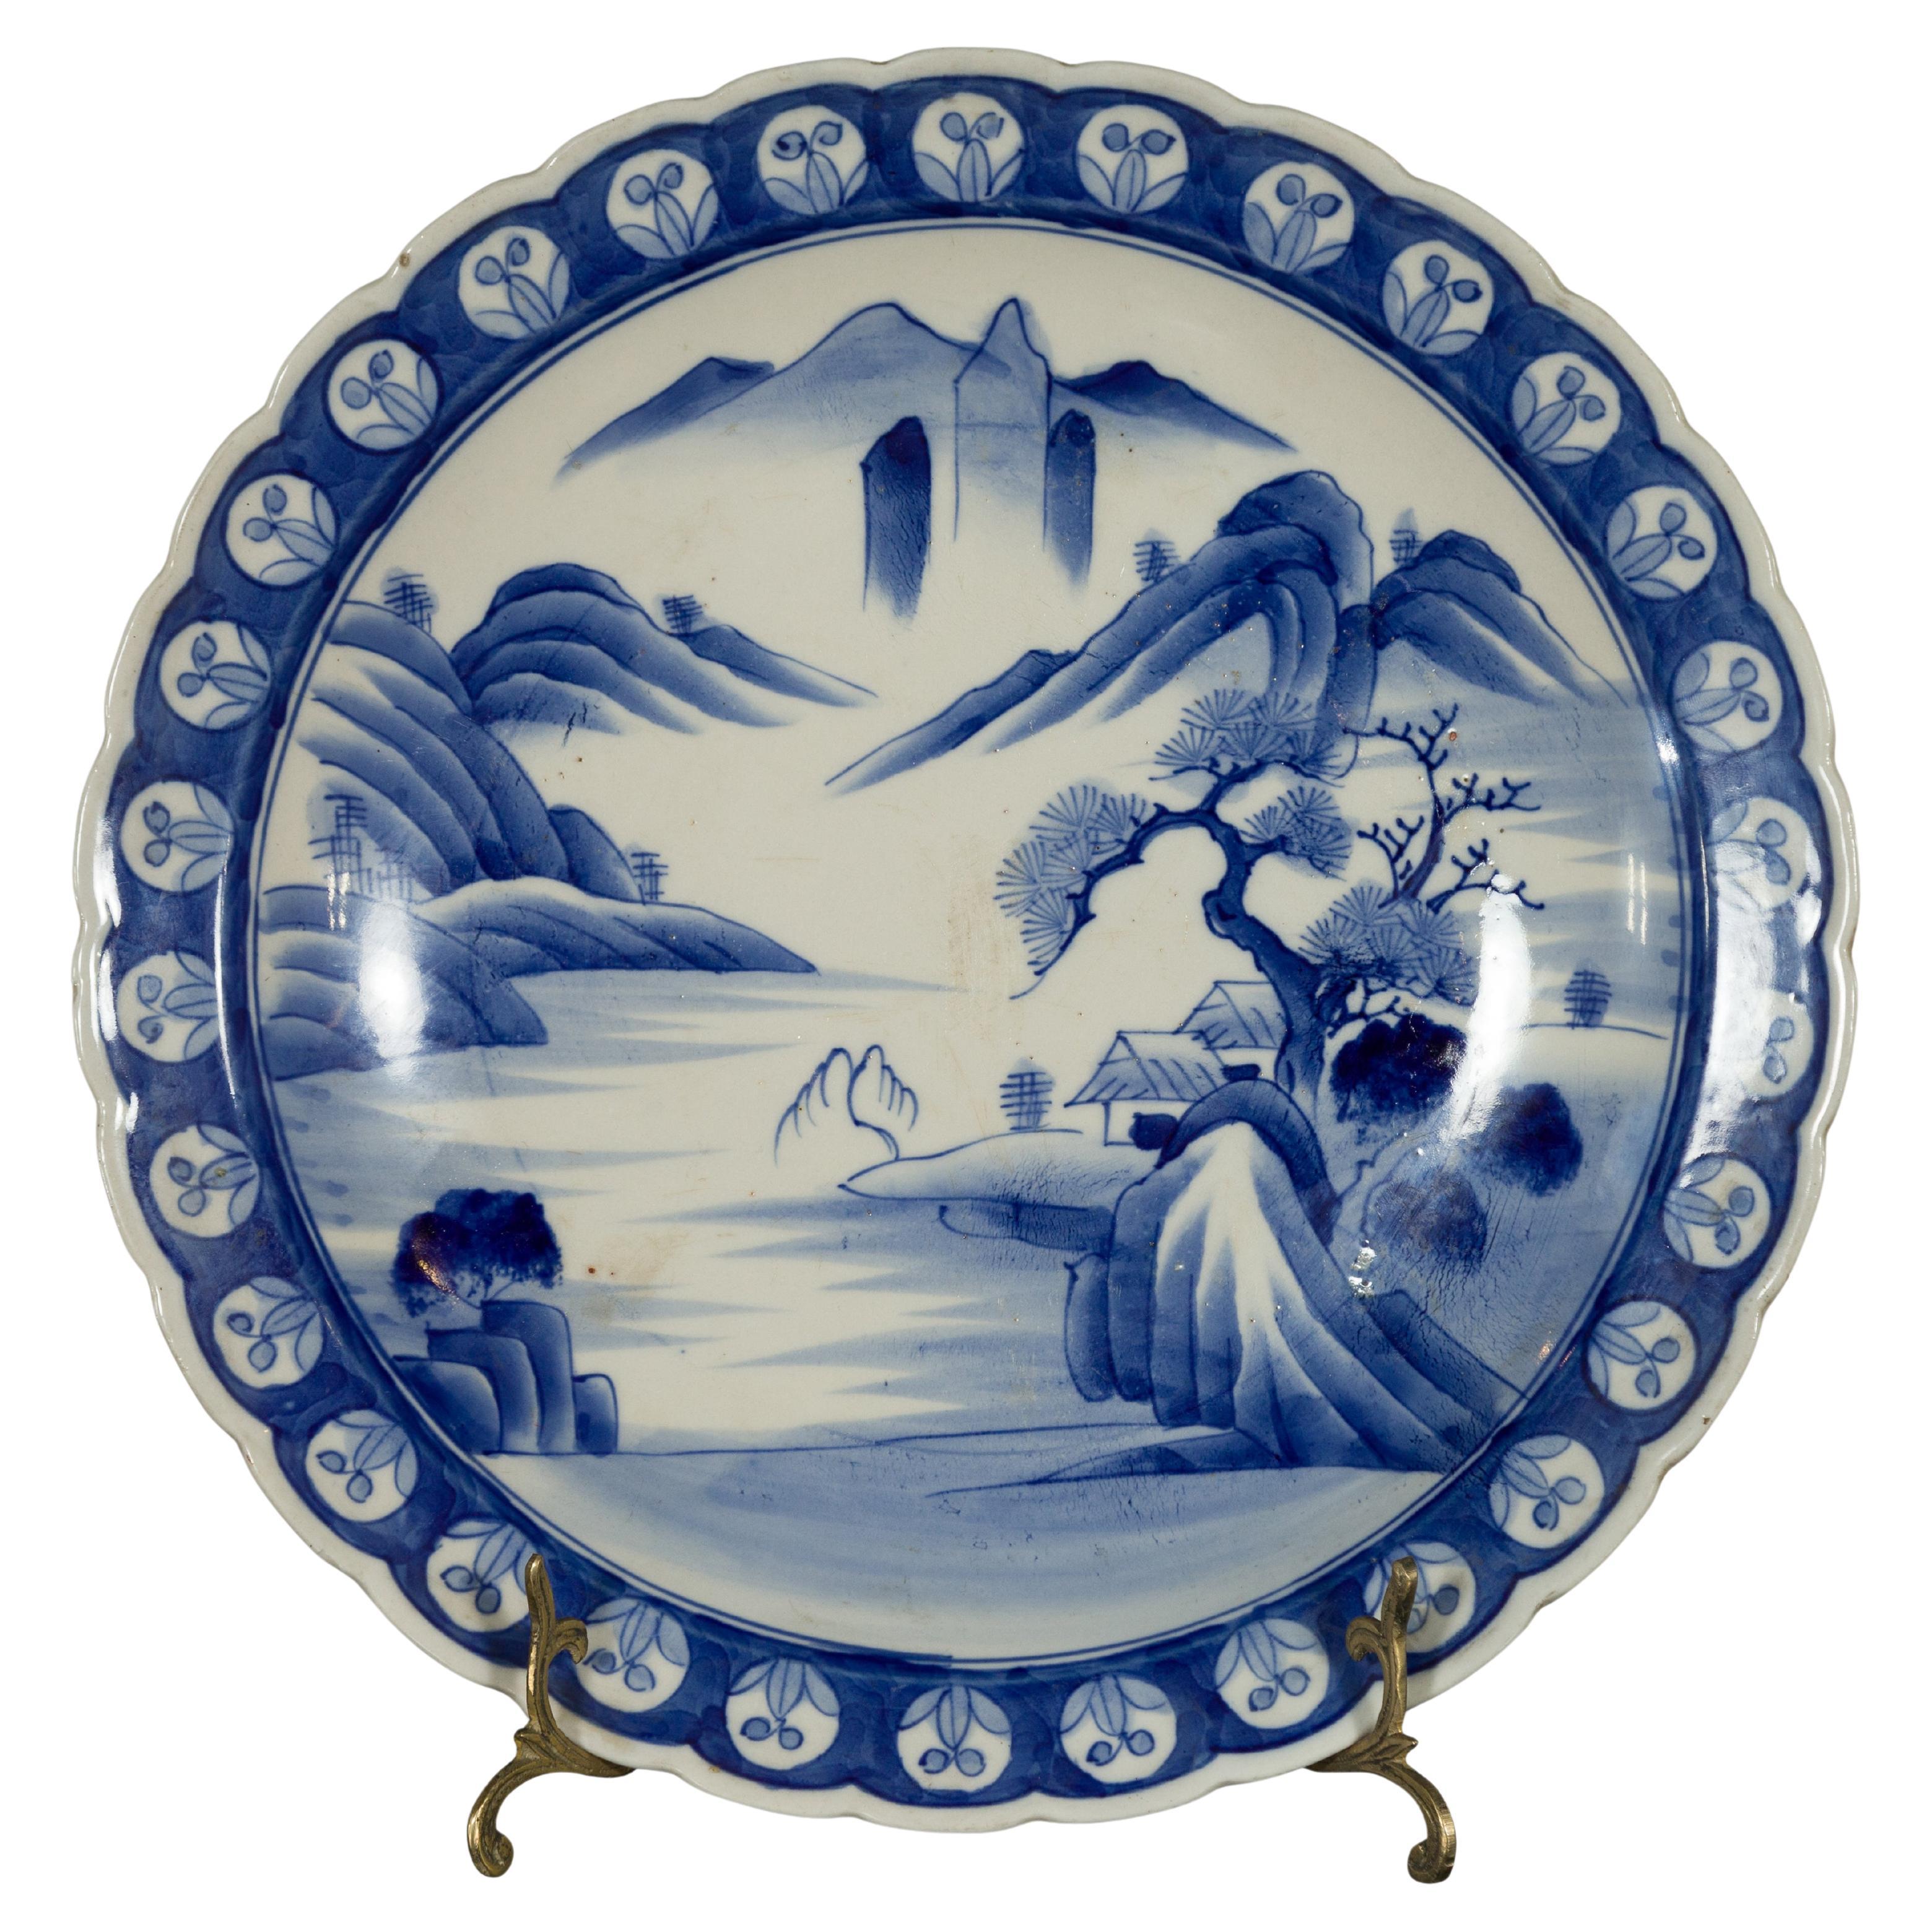 Assiette japonaise du 19ème siècle en porcelaine bleue et blanche avec paysage montagneux